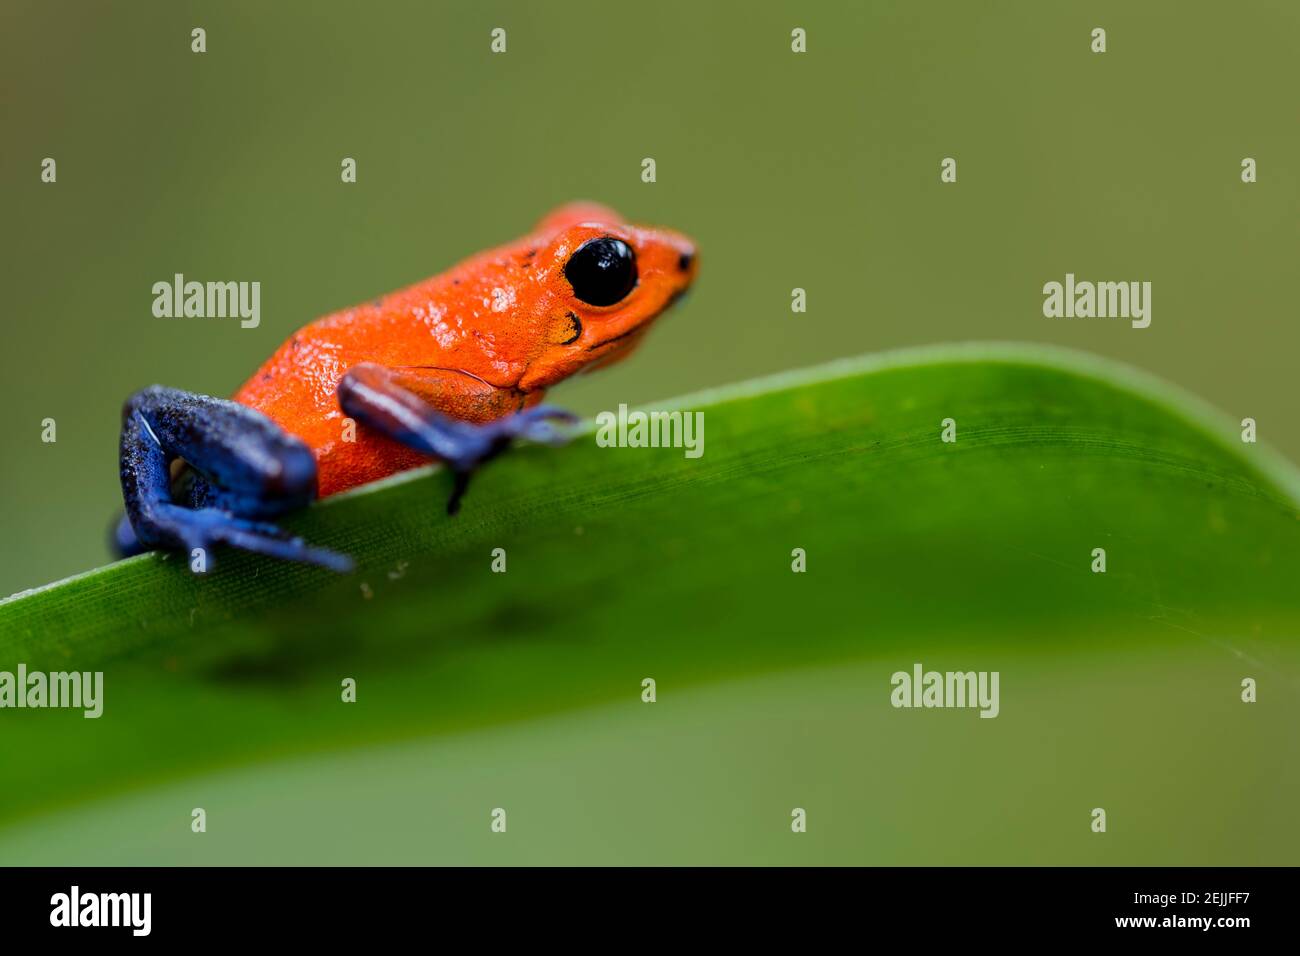 Pequeña rana de Envenenamiento de Fresa (Oophaga pumilio) con ojos negros, piel roja y azul con manchas negras. Listo para saltar de un verde en la selva tropical Foto de stock